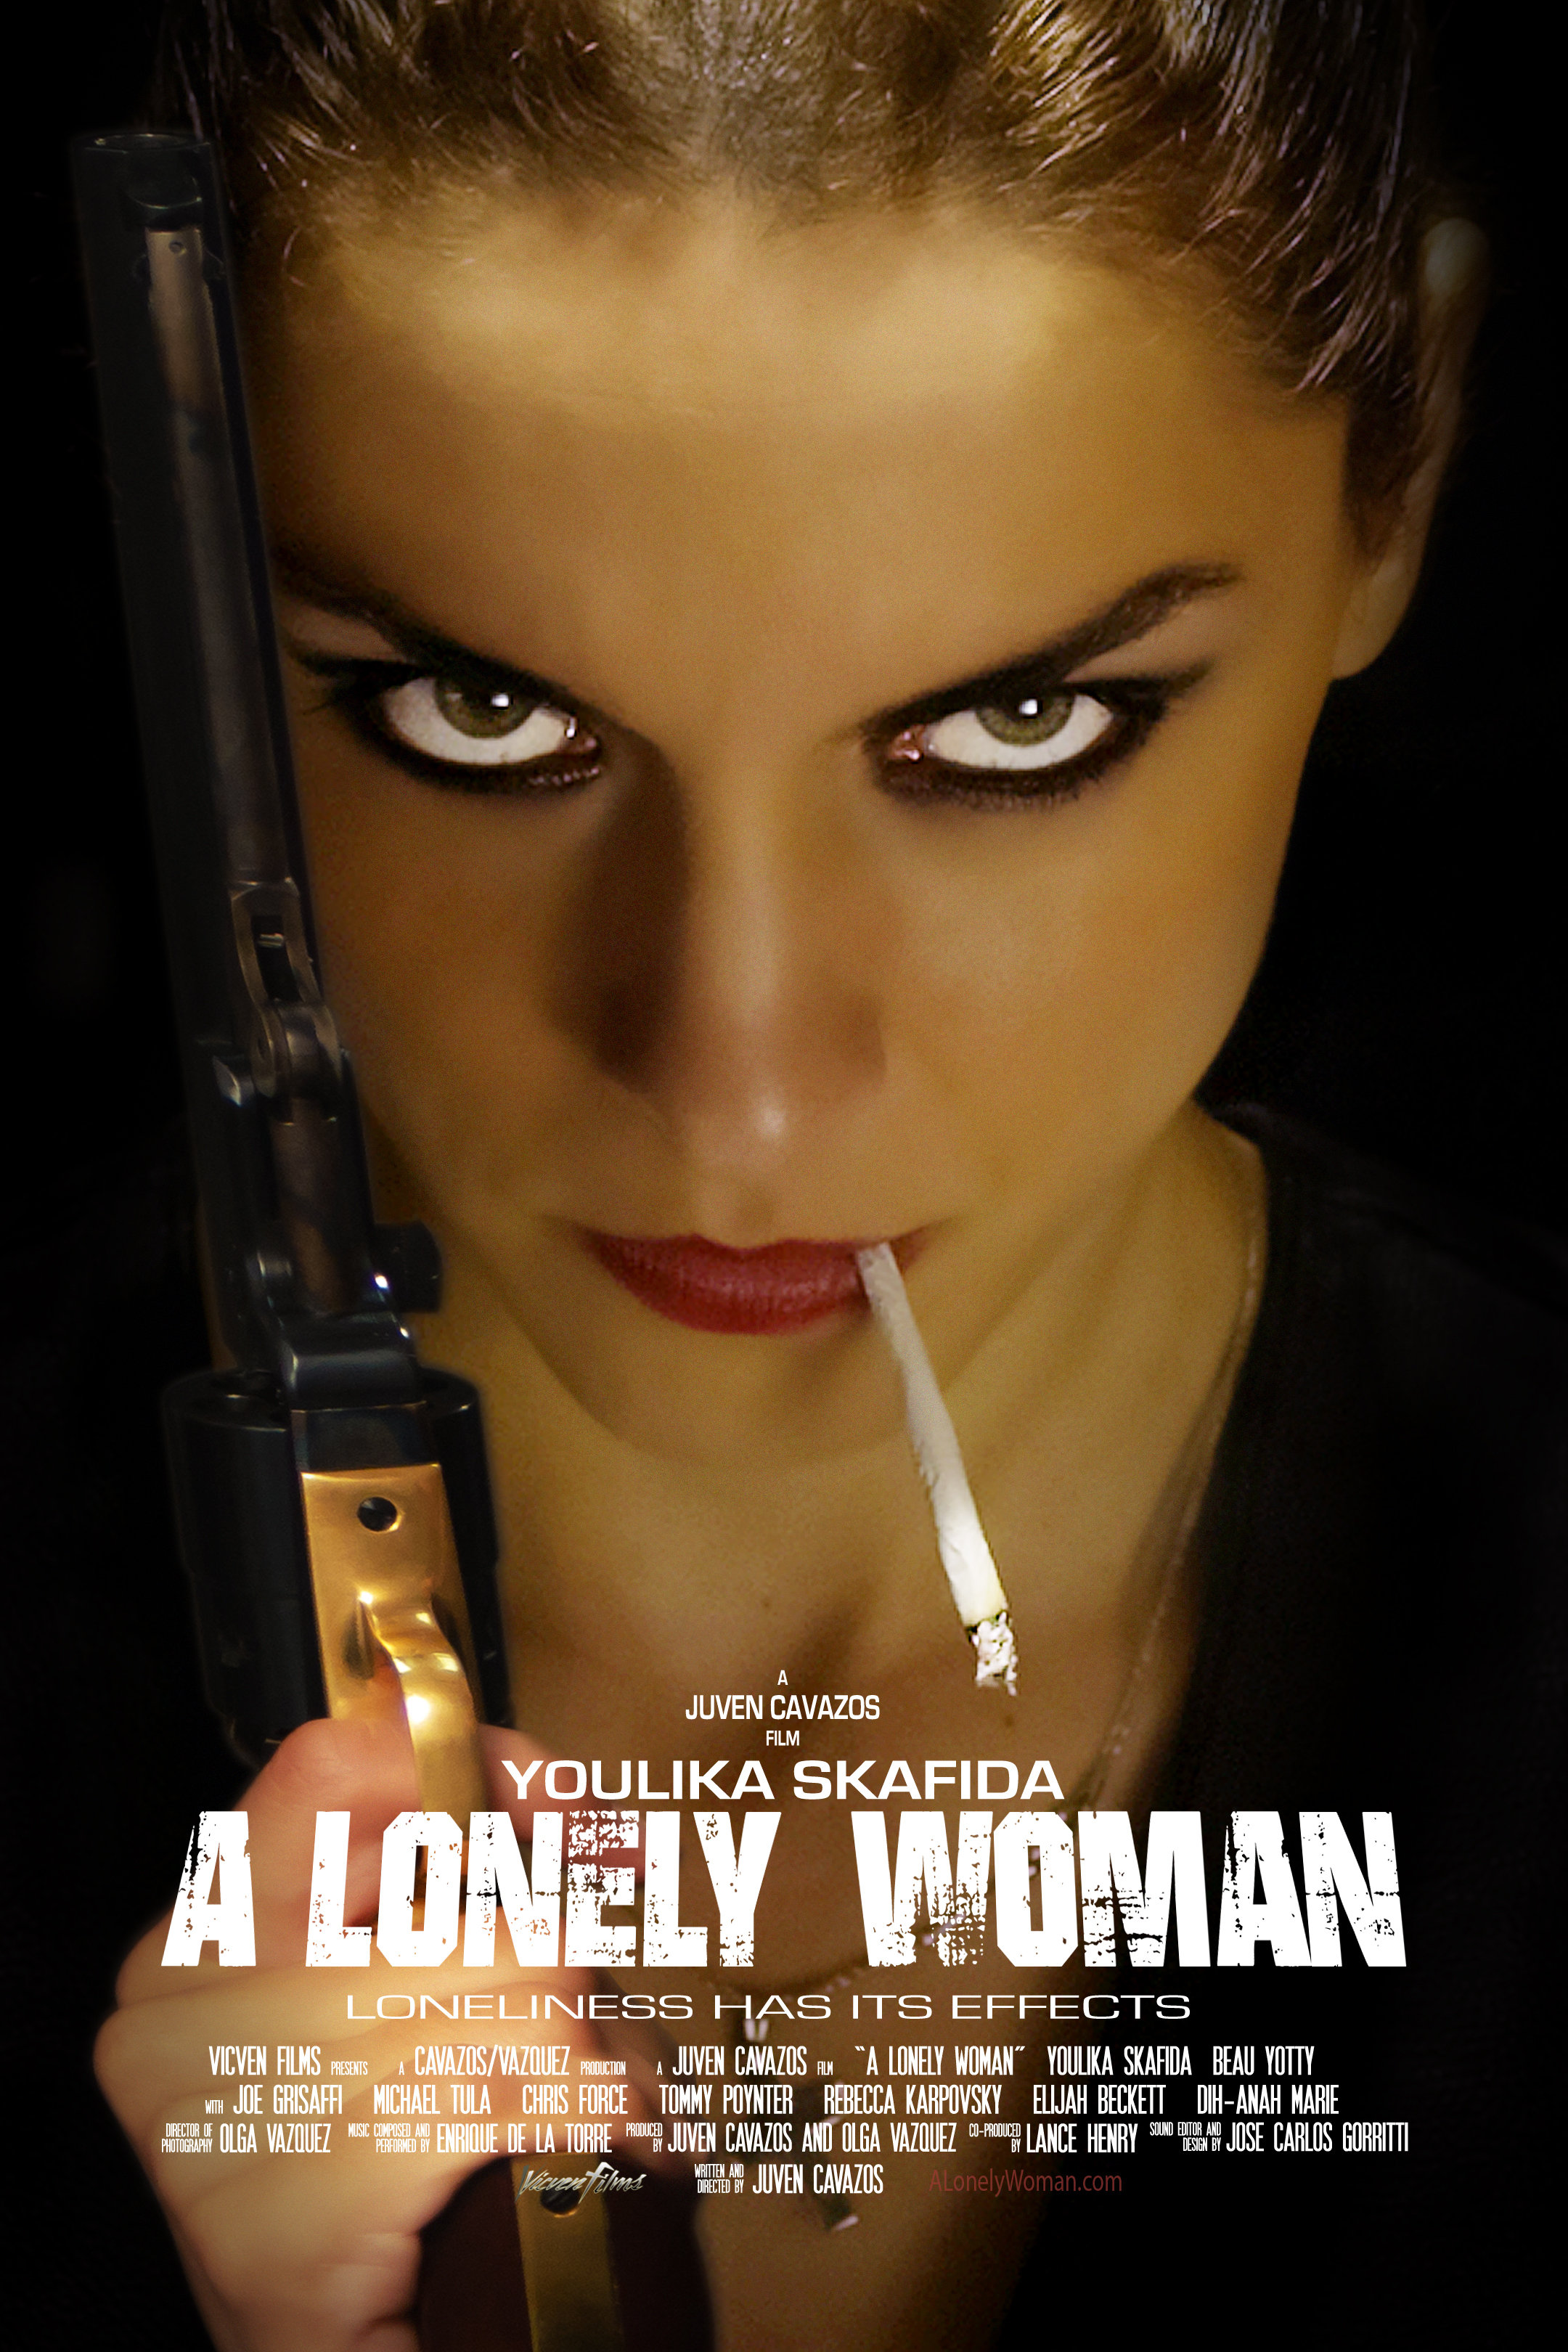 Nonton film A Lonely Woman layarkaca21 indoxx1 ganool online streaming terbaru